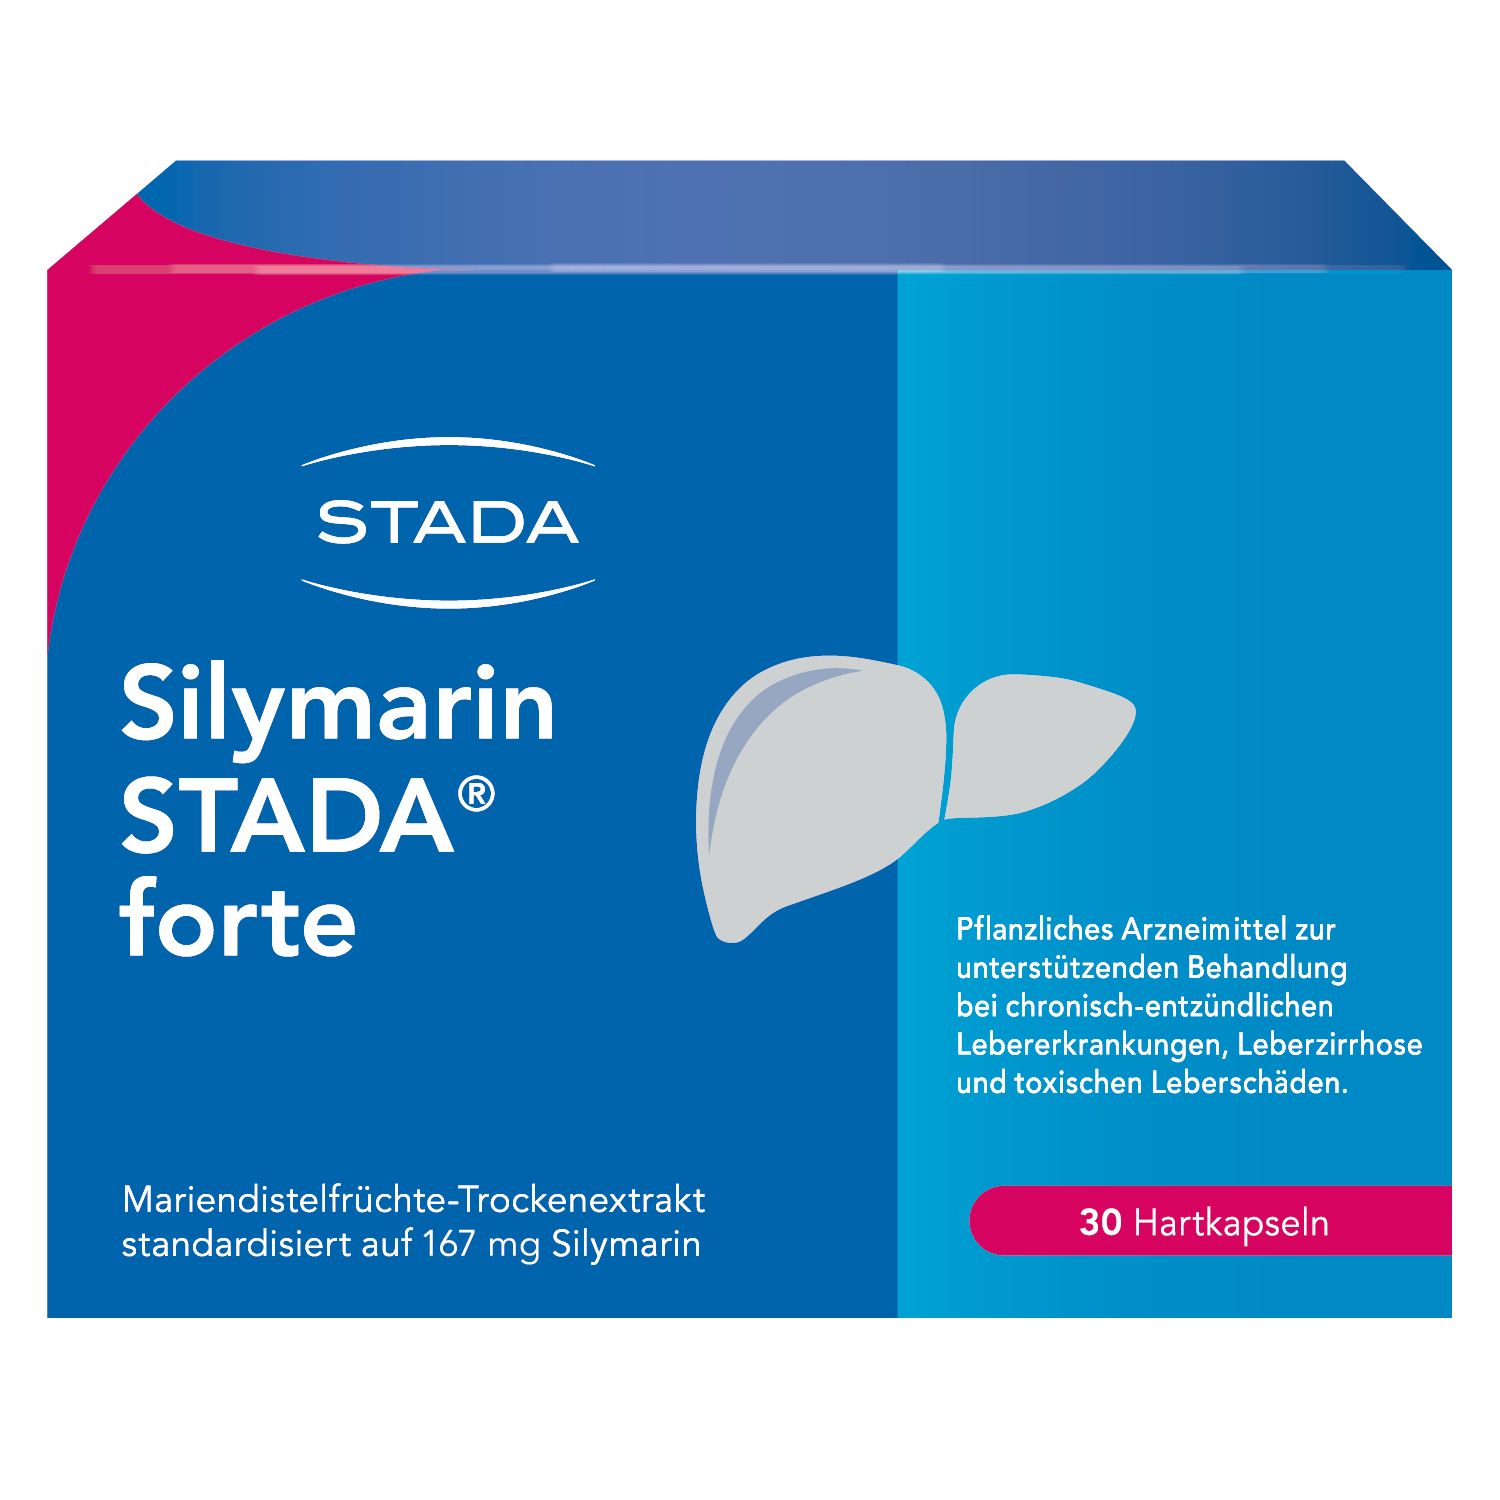 Silymarin STADA® forte, bei chronisch-entzündlichen Lebererkrankungen, Leberzirrhose und toxischen Leberschäden